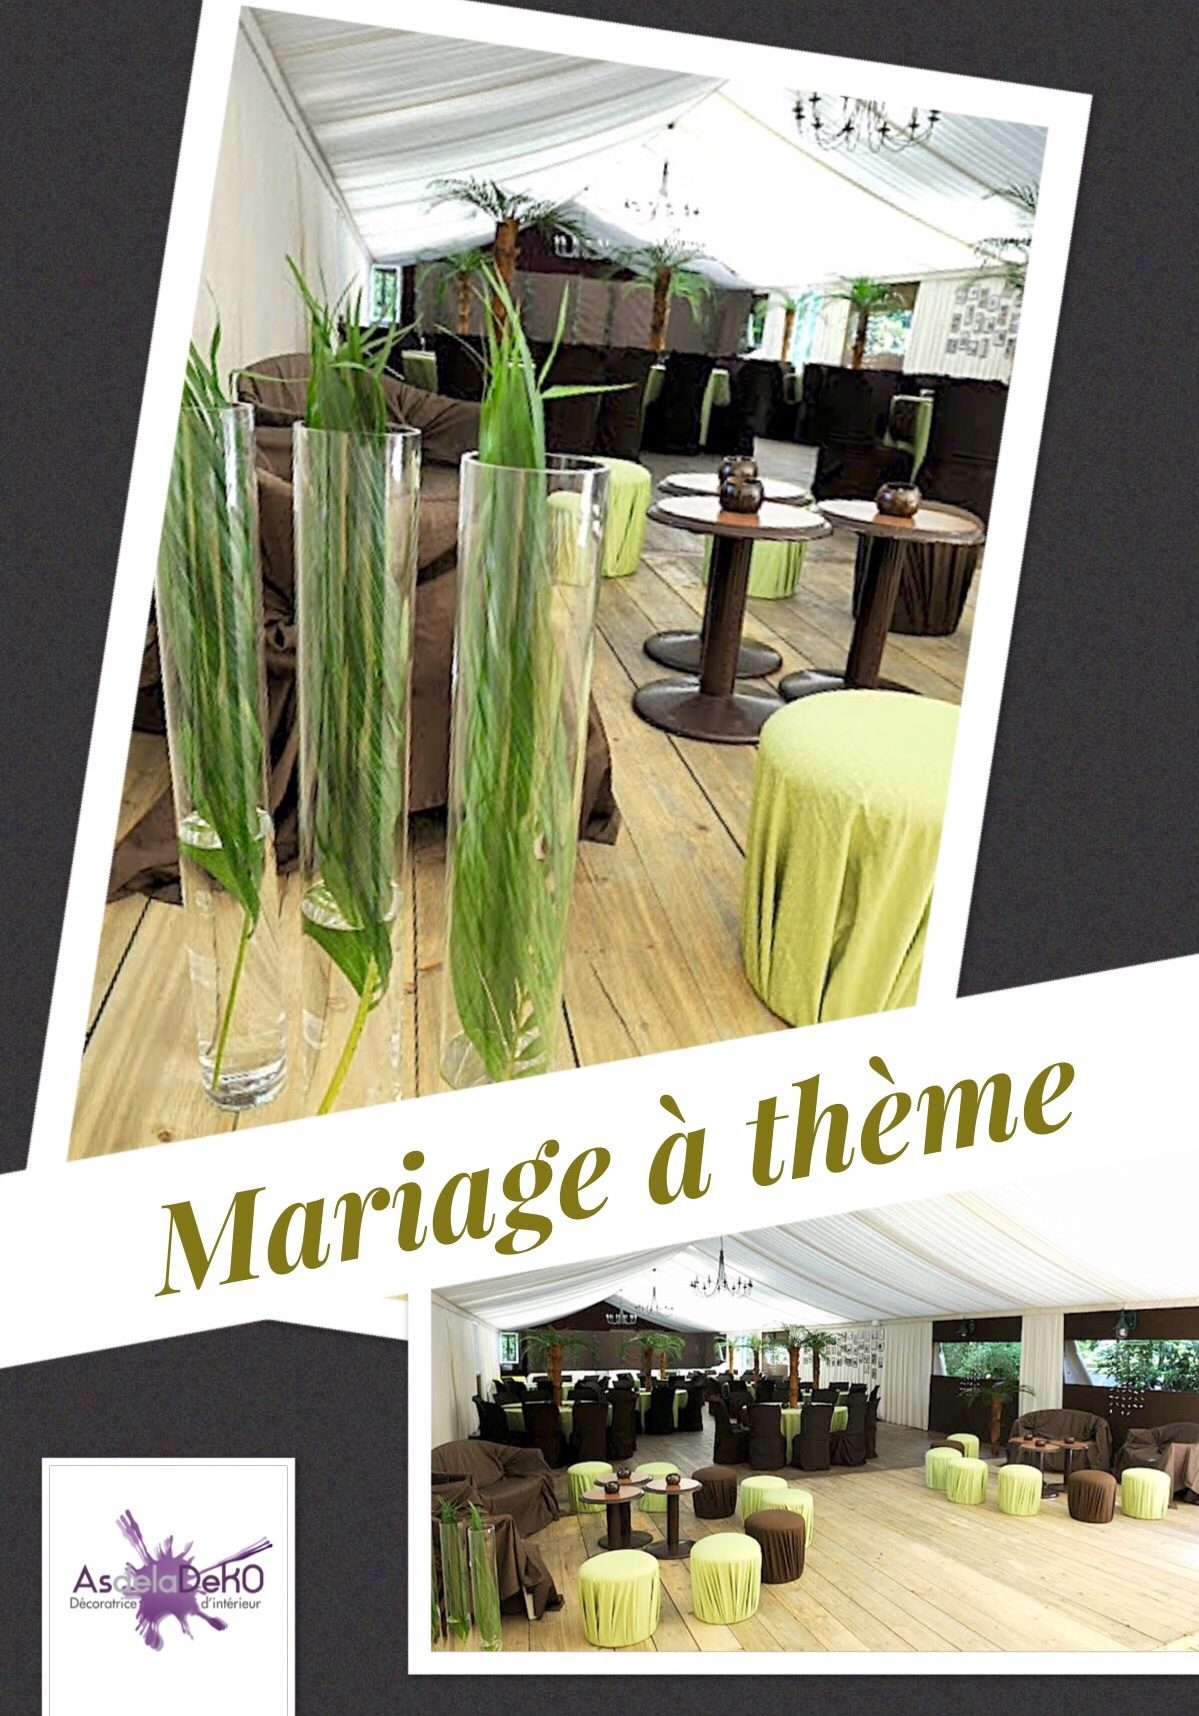 asdeladeko-decoratrice-mariage-theme